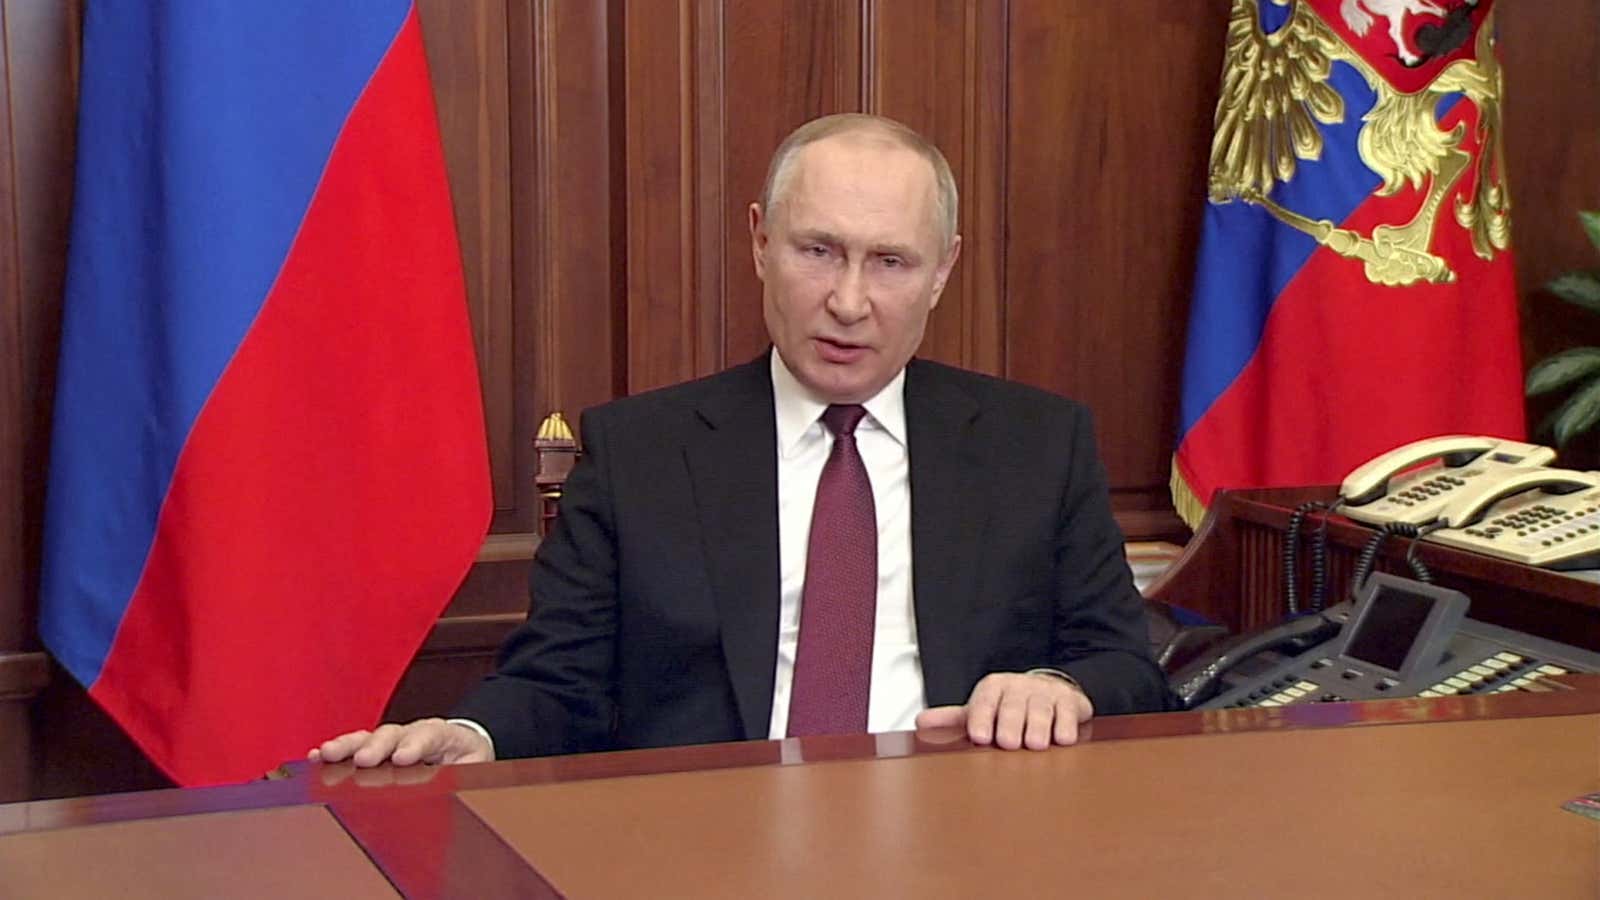 Putin announces the attack on Ukraine.